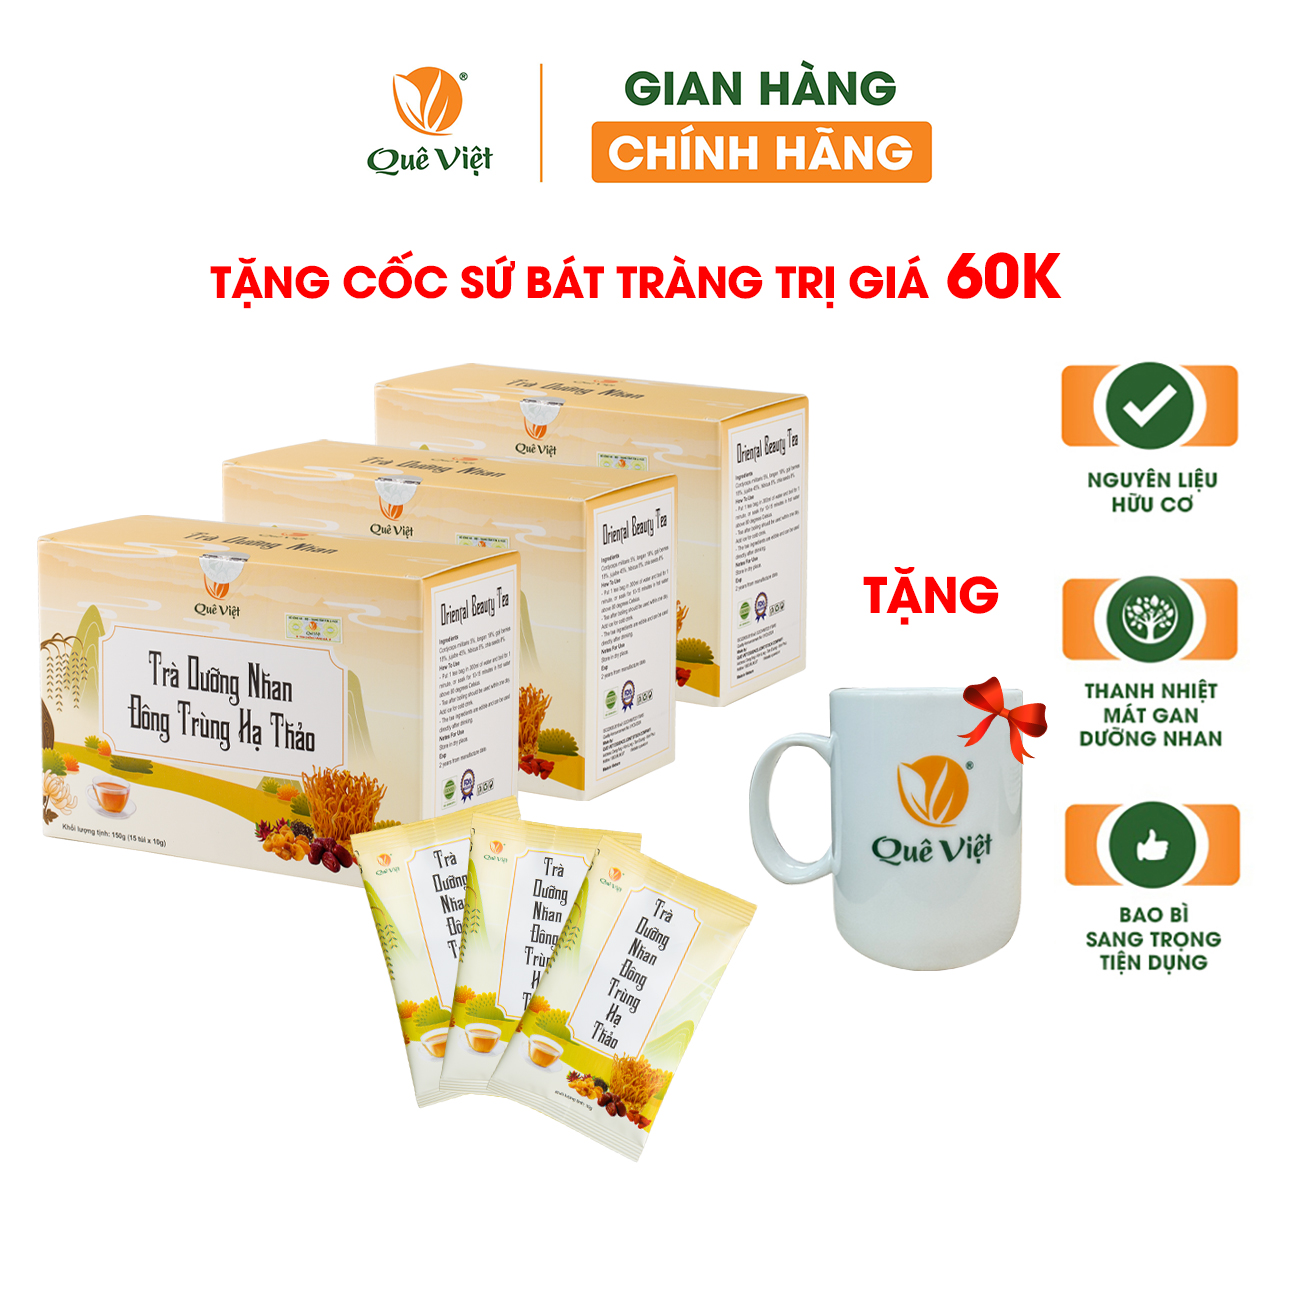 Hình ảnh Combo 3 hộp - Tra dưỡng nhan đông trùng hạ thảo Quê Việt + tặng 1 cốc gốm sứ bát tràng - Hộp 150g (10g x 15 túi)